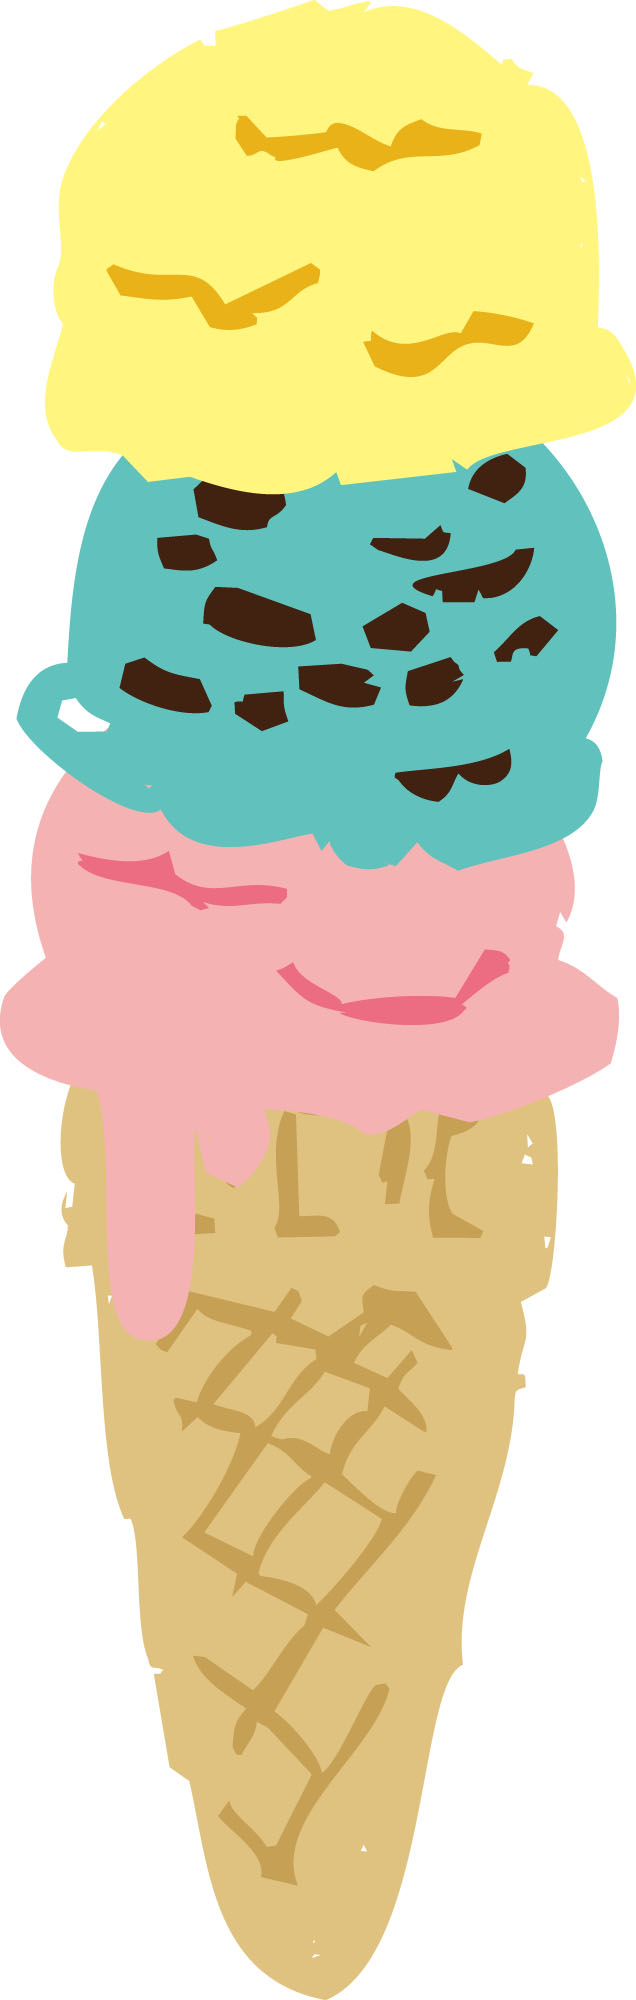 31マイスクリーム